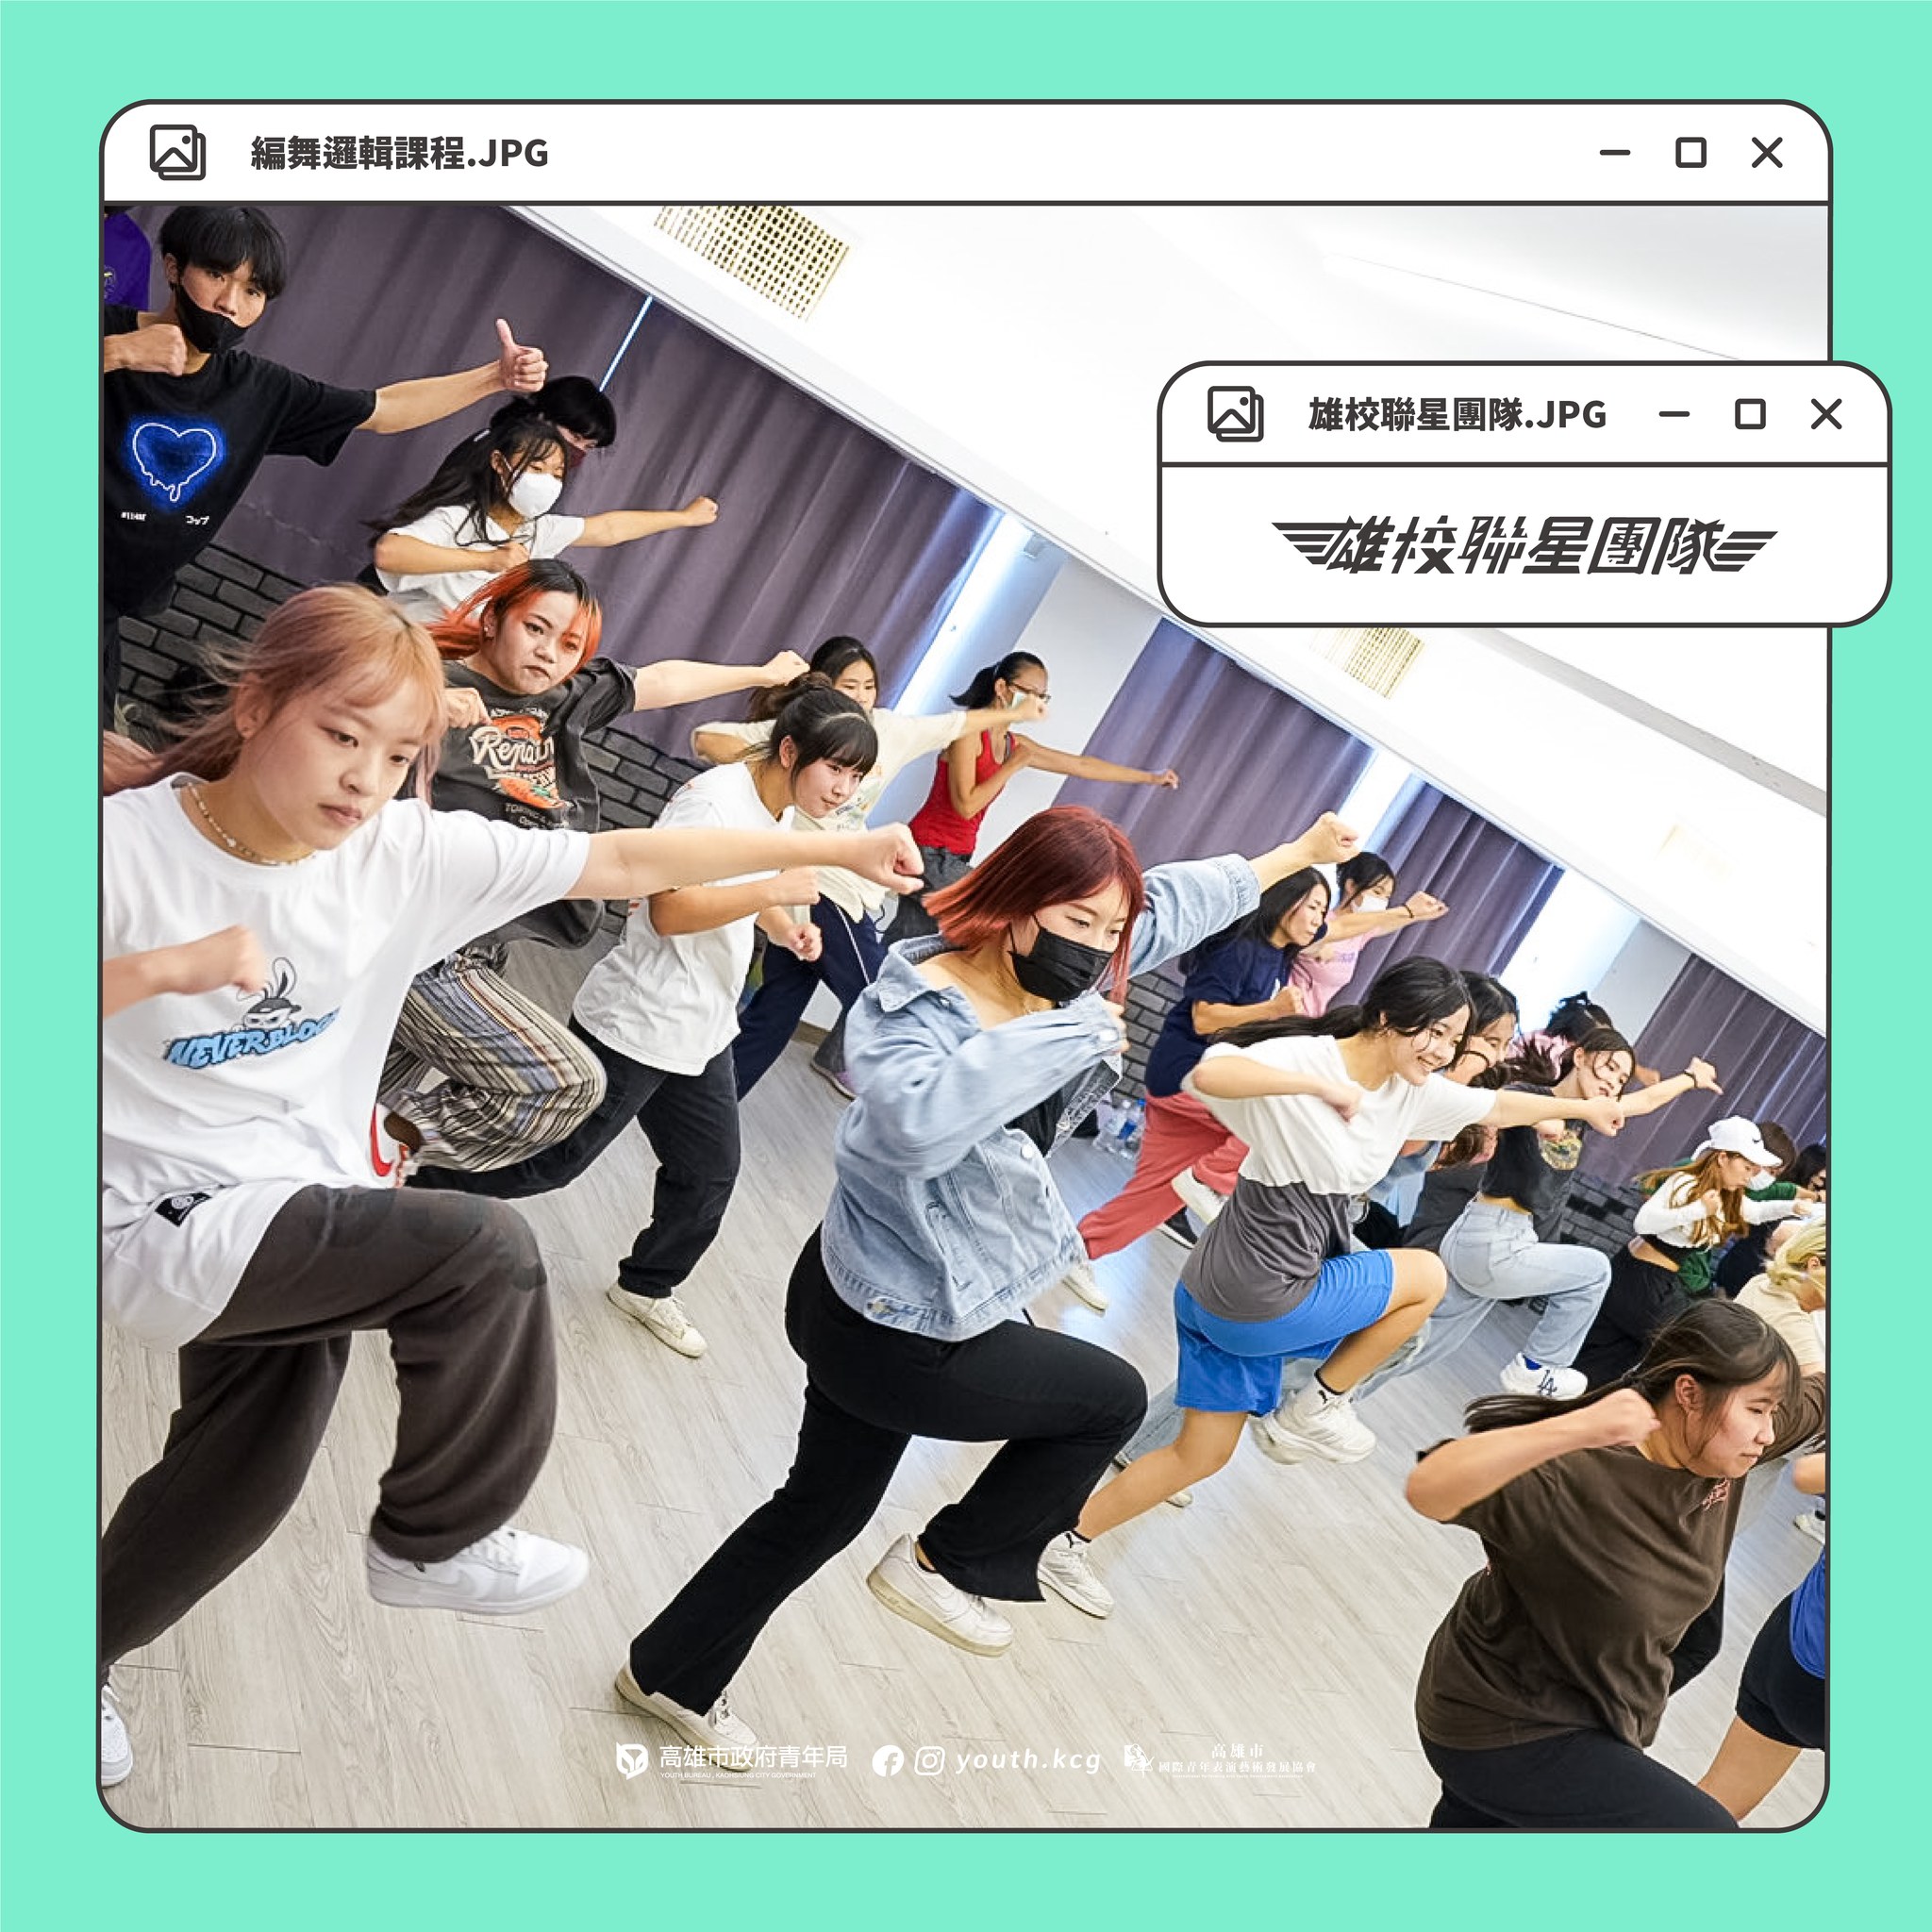 編舞邏輯課程 - World structure of dance class的第4張圖片